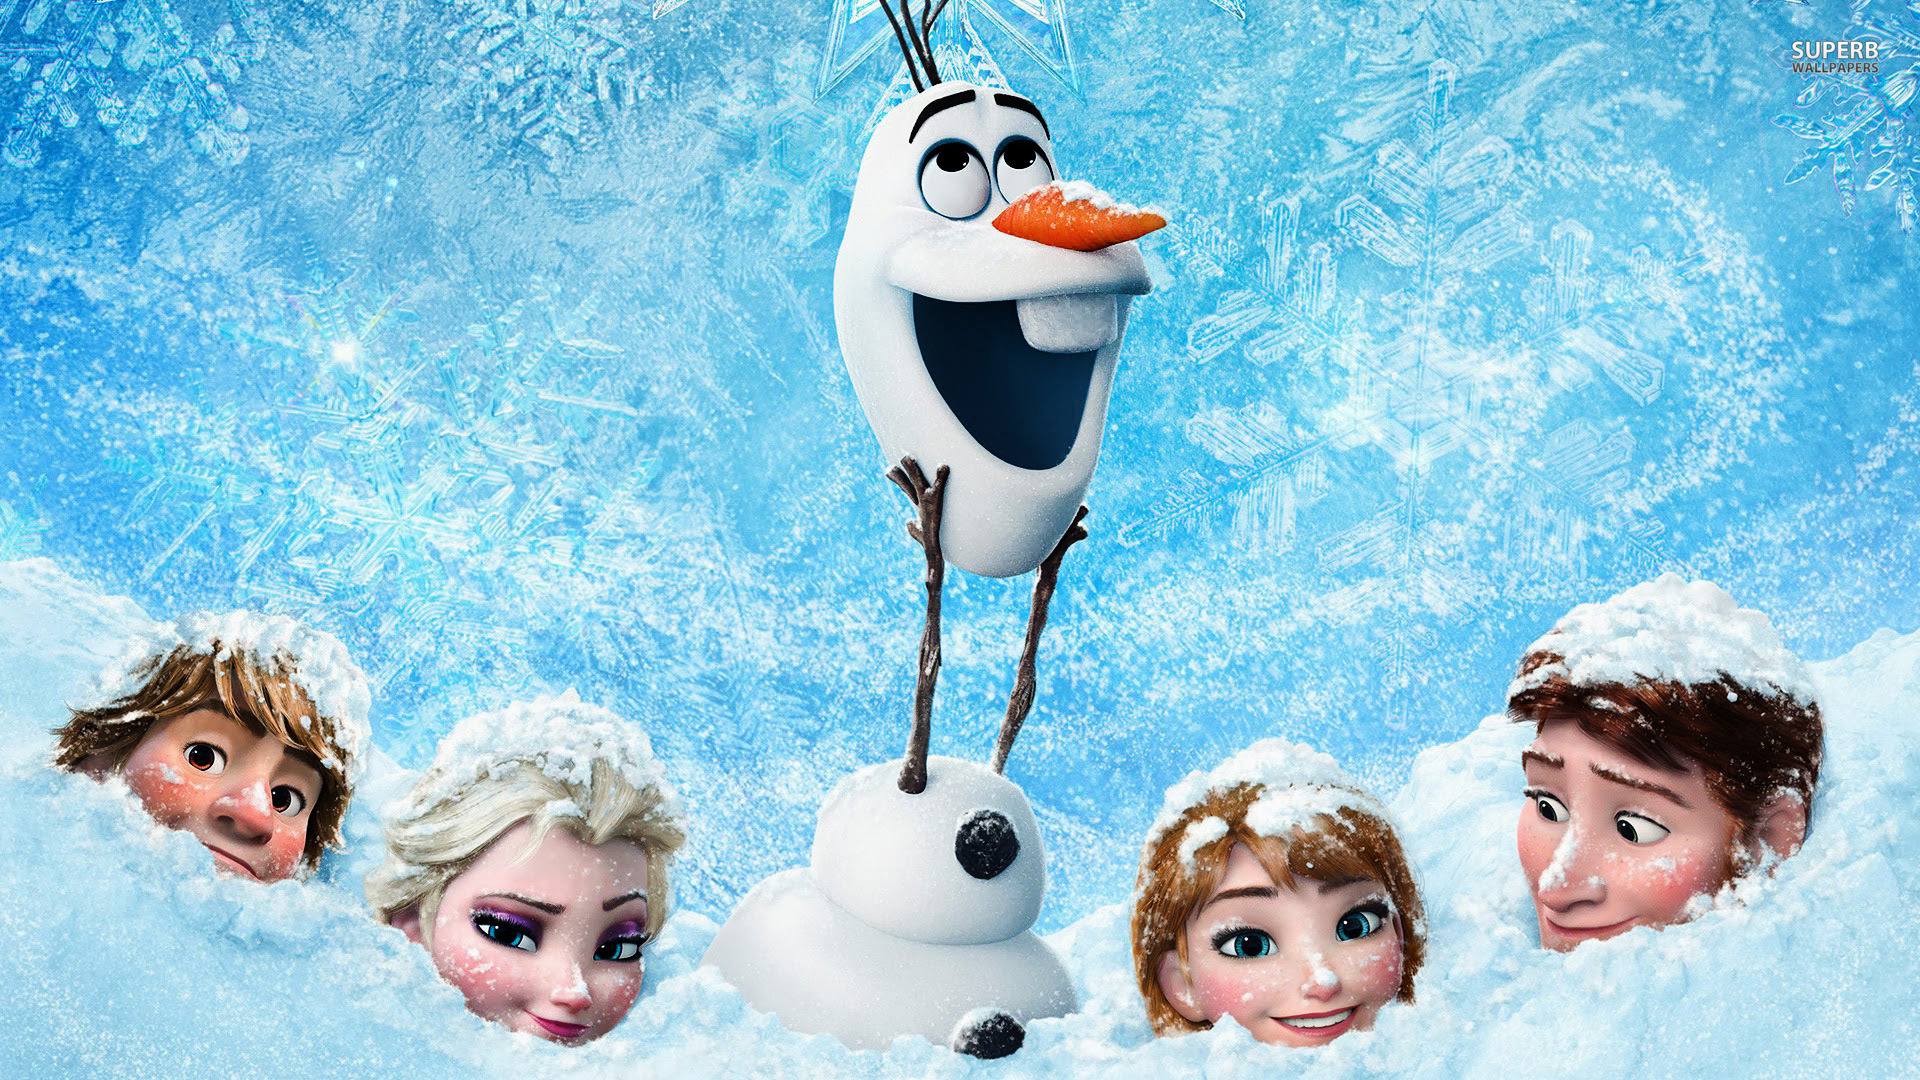 Amazing Wallpaper Frozen Characters In Snow